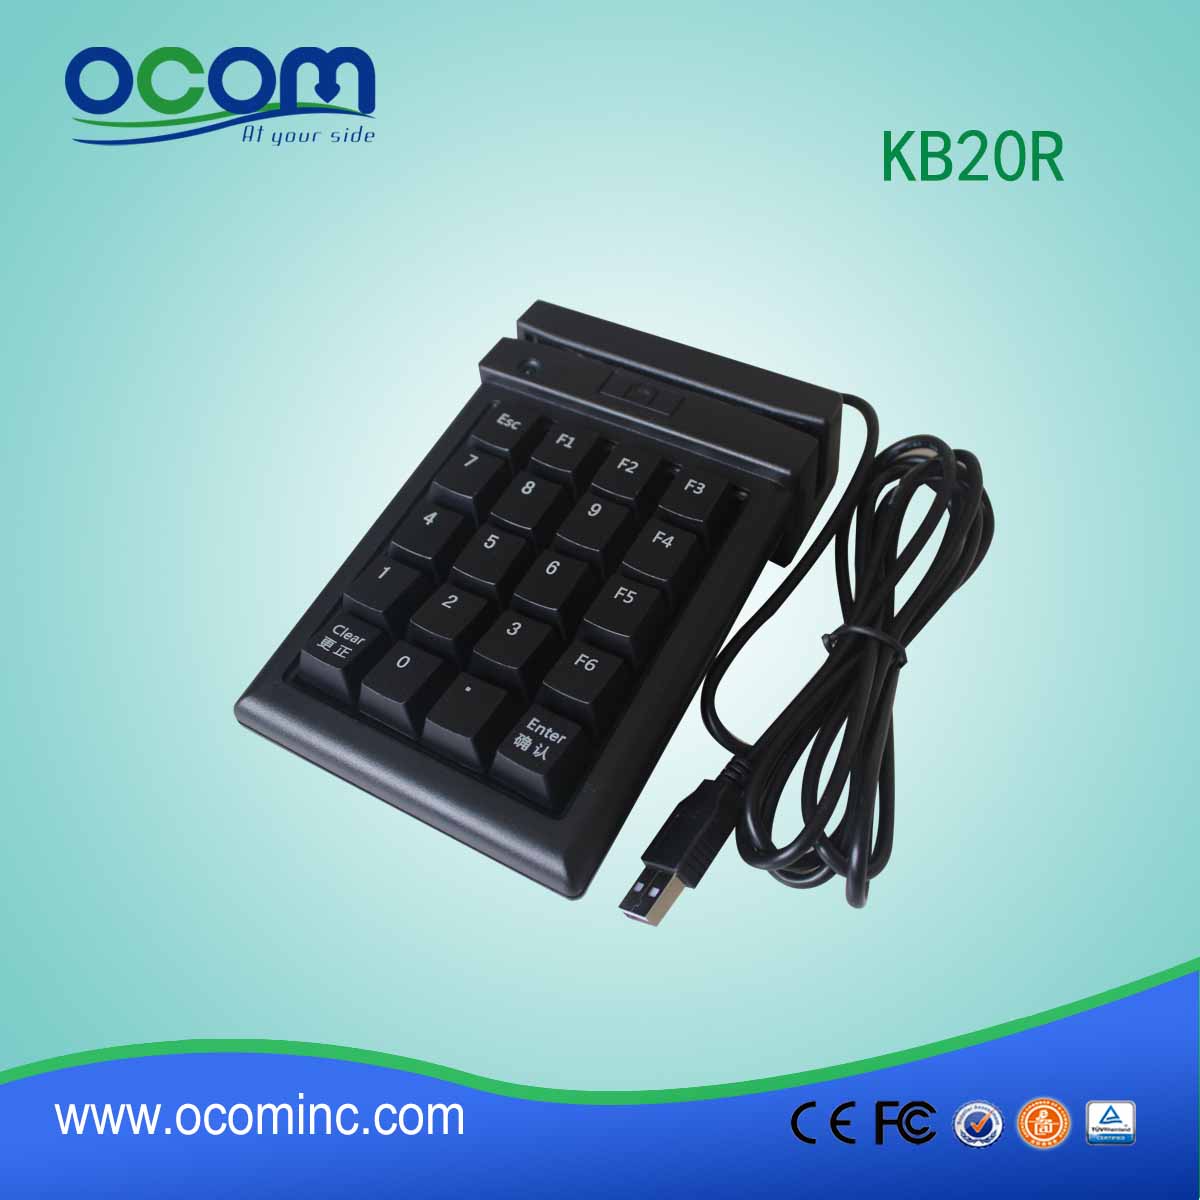 KB20R قارئ بطاقة الشريط المغناطيسي مع 20 لوحة مفاتيح pinpad لثلاثية المسارات